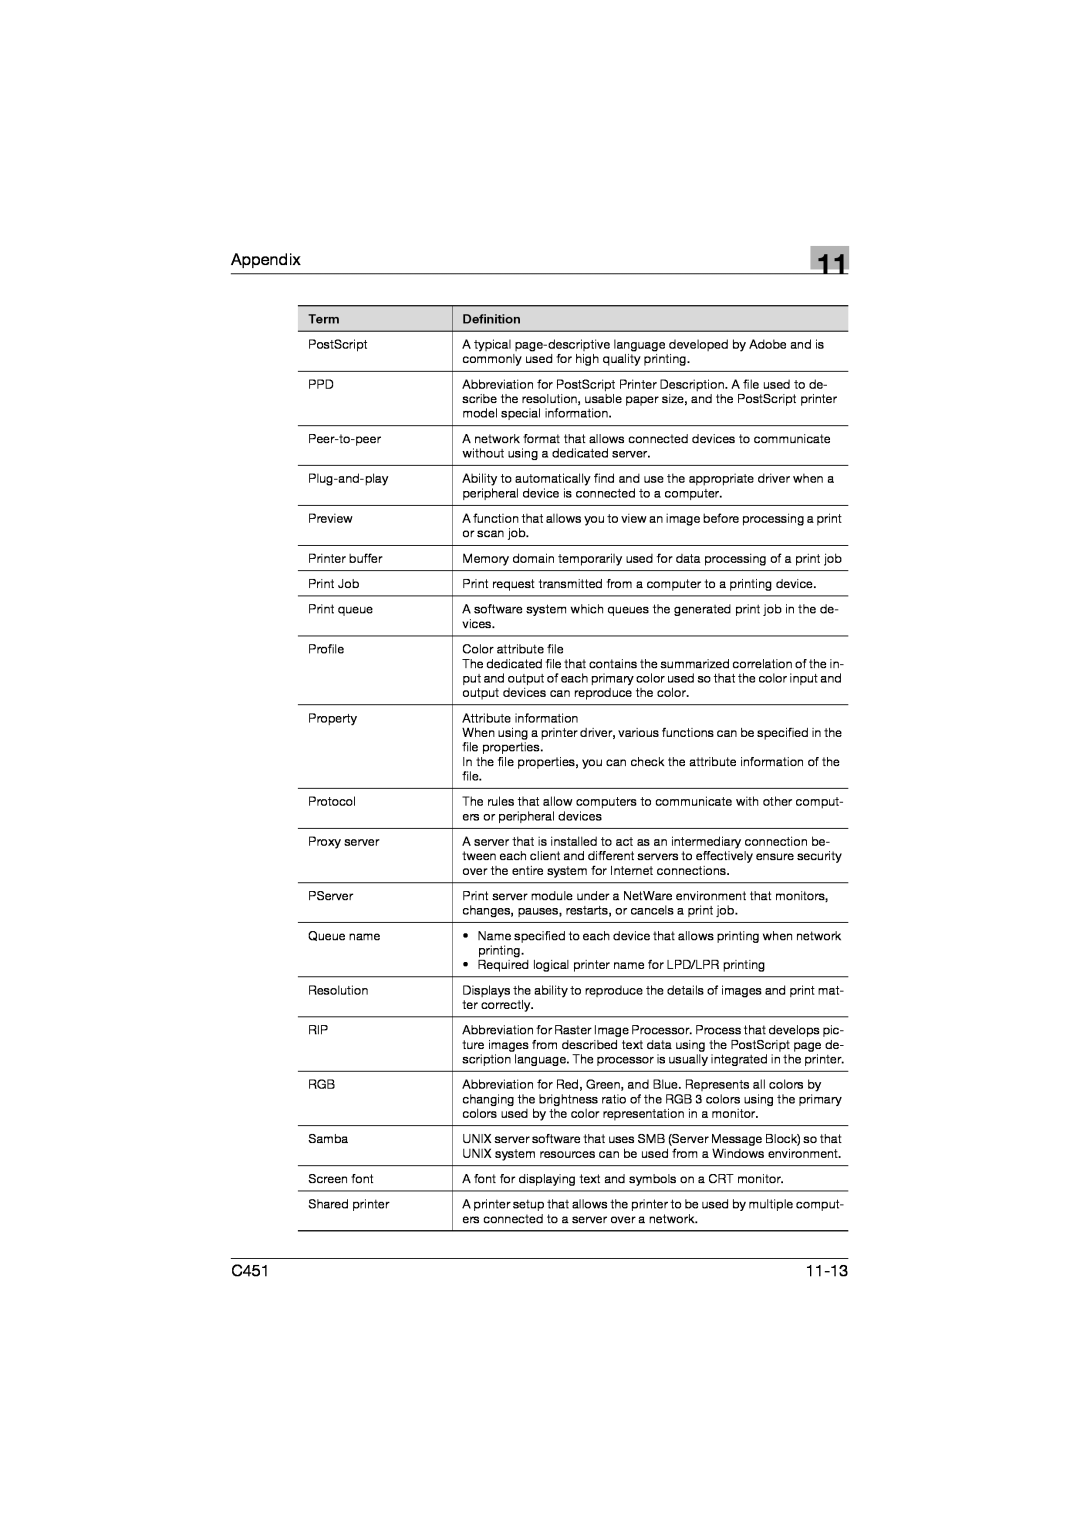 Konica Minolta C451 manual Appendix, 11-13 